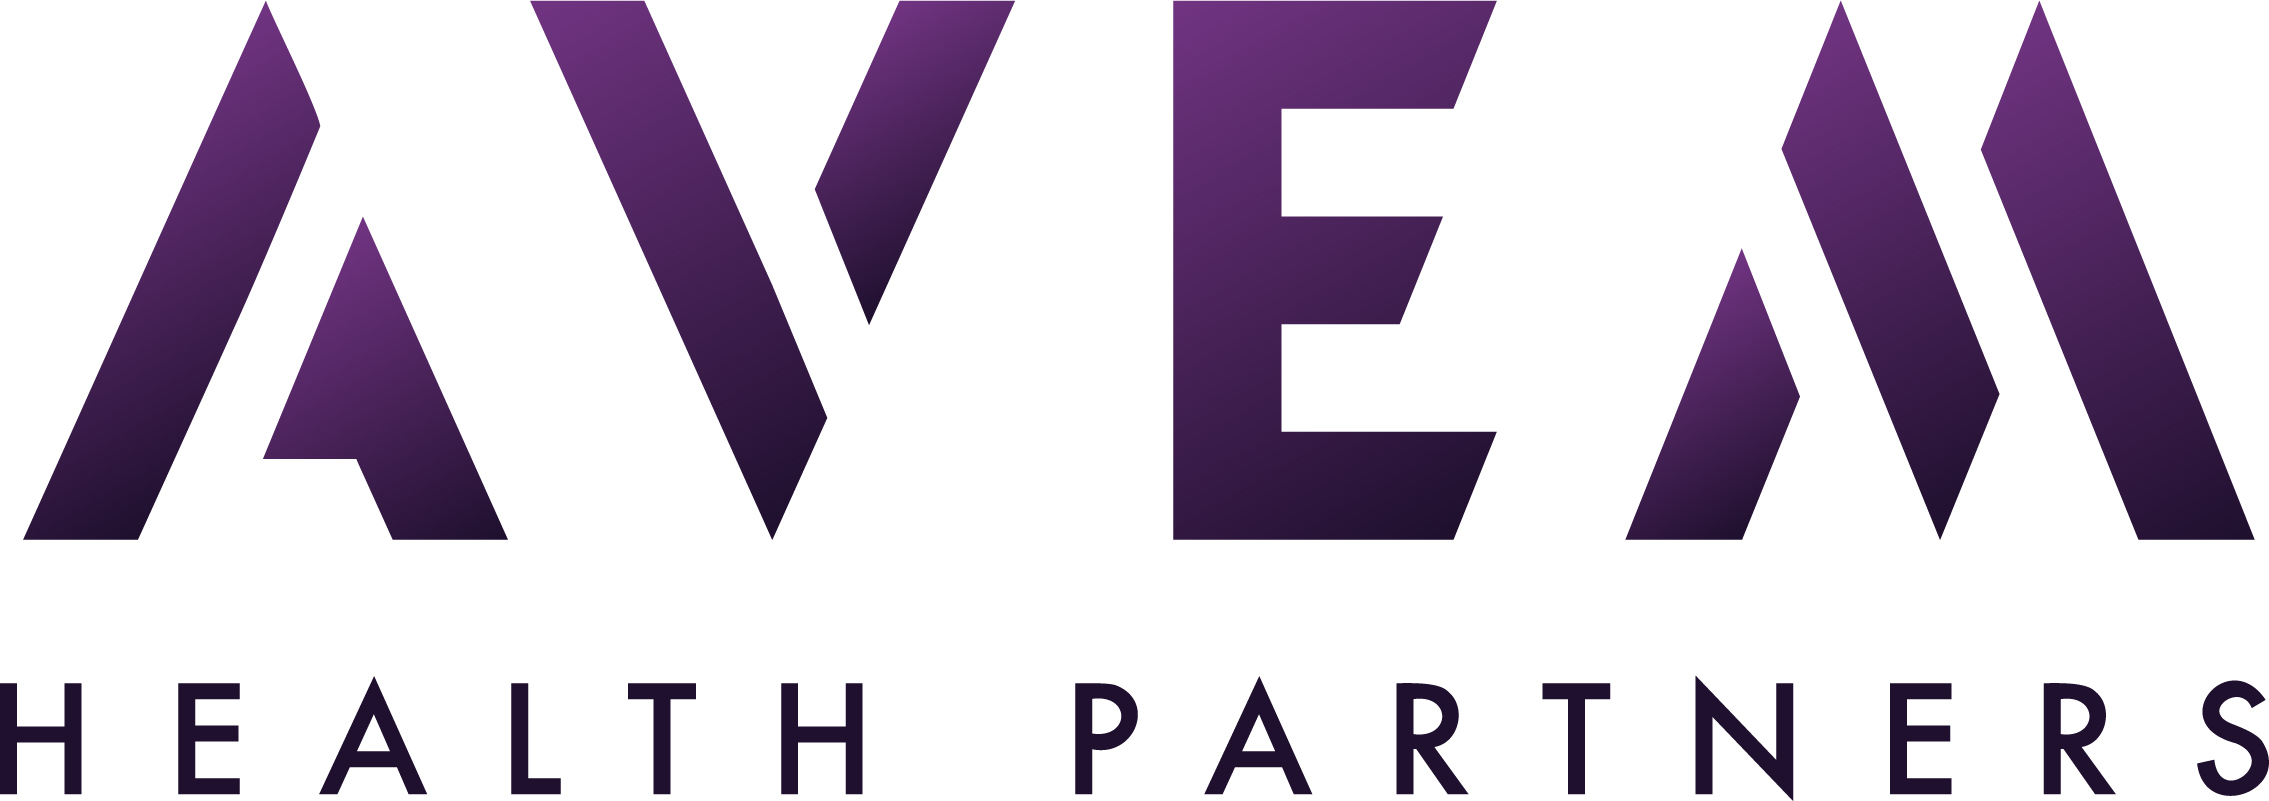 Avem Health Partners logo